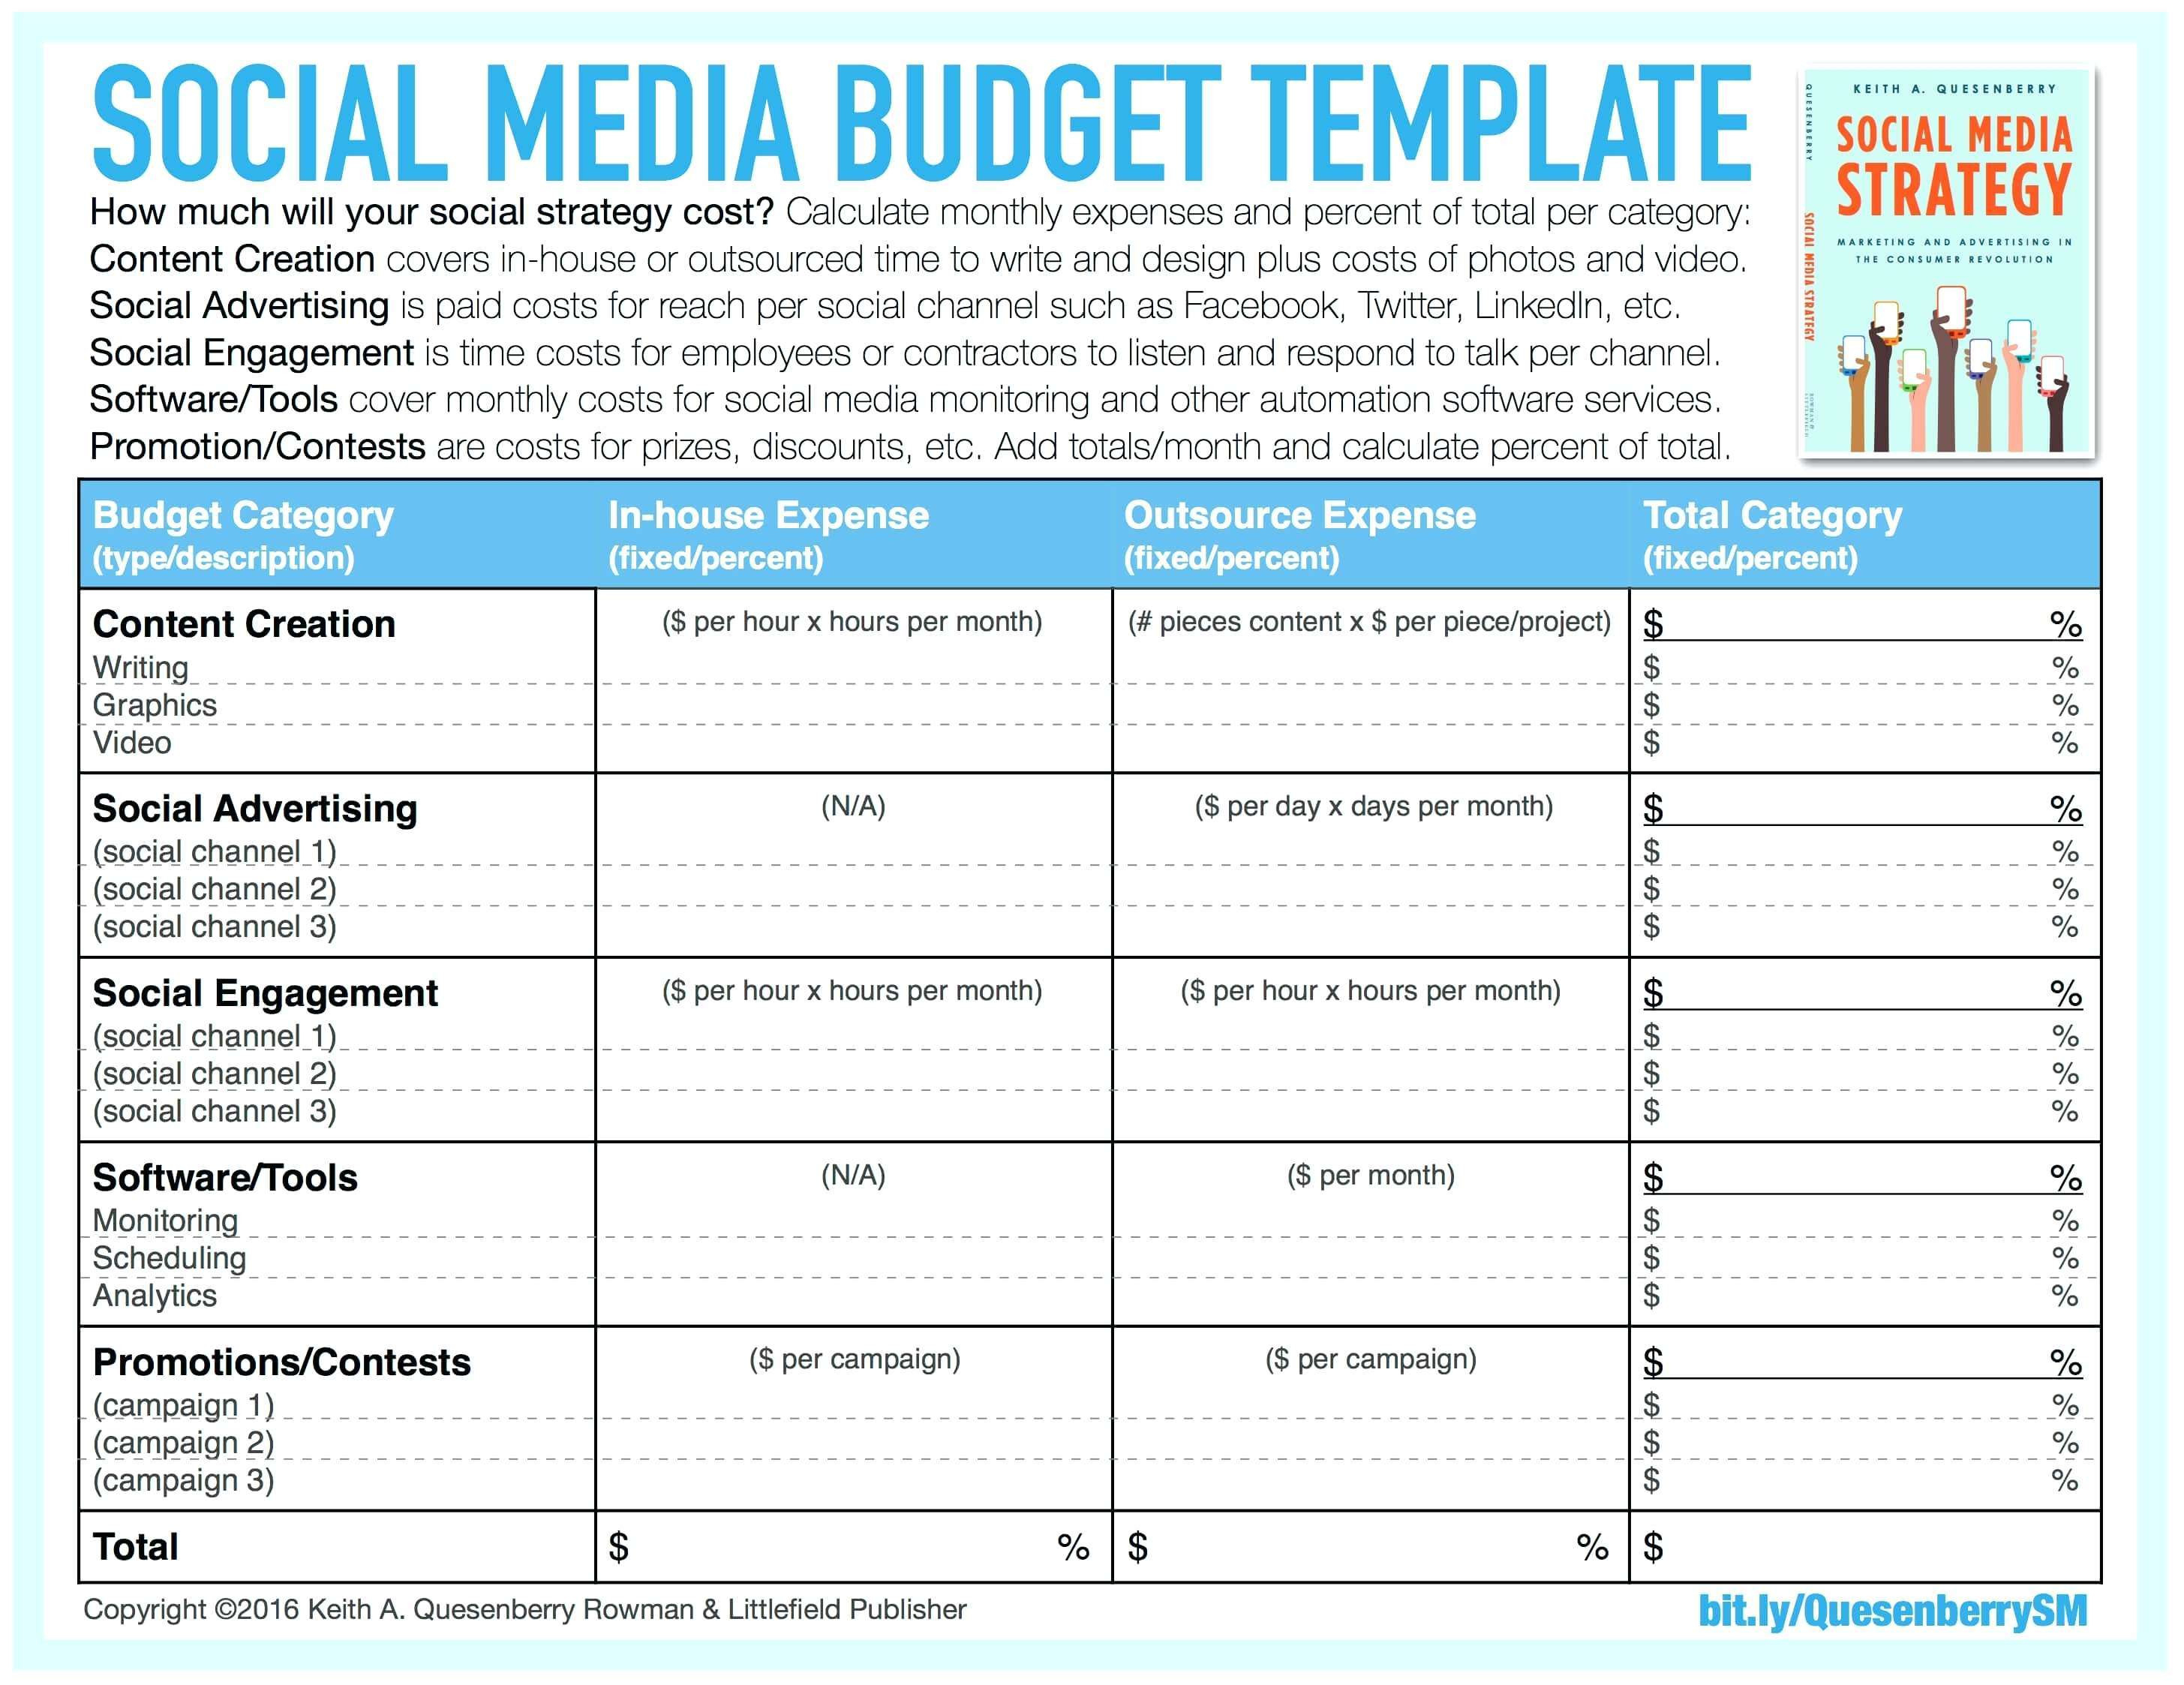 Social Media Plan Template Marketing Business Popular For Al pertaining to Social Media Marketing Business Plan Template